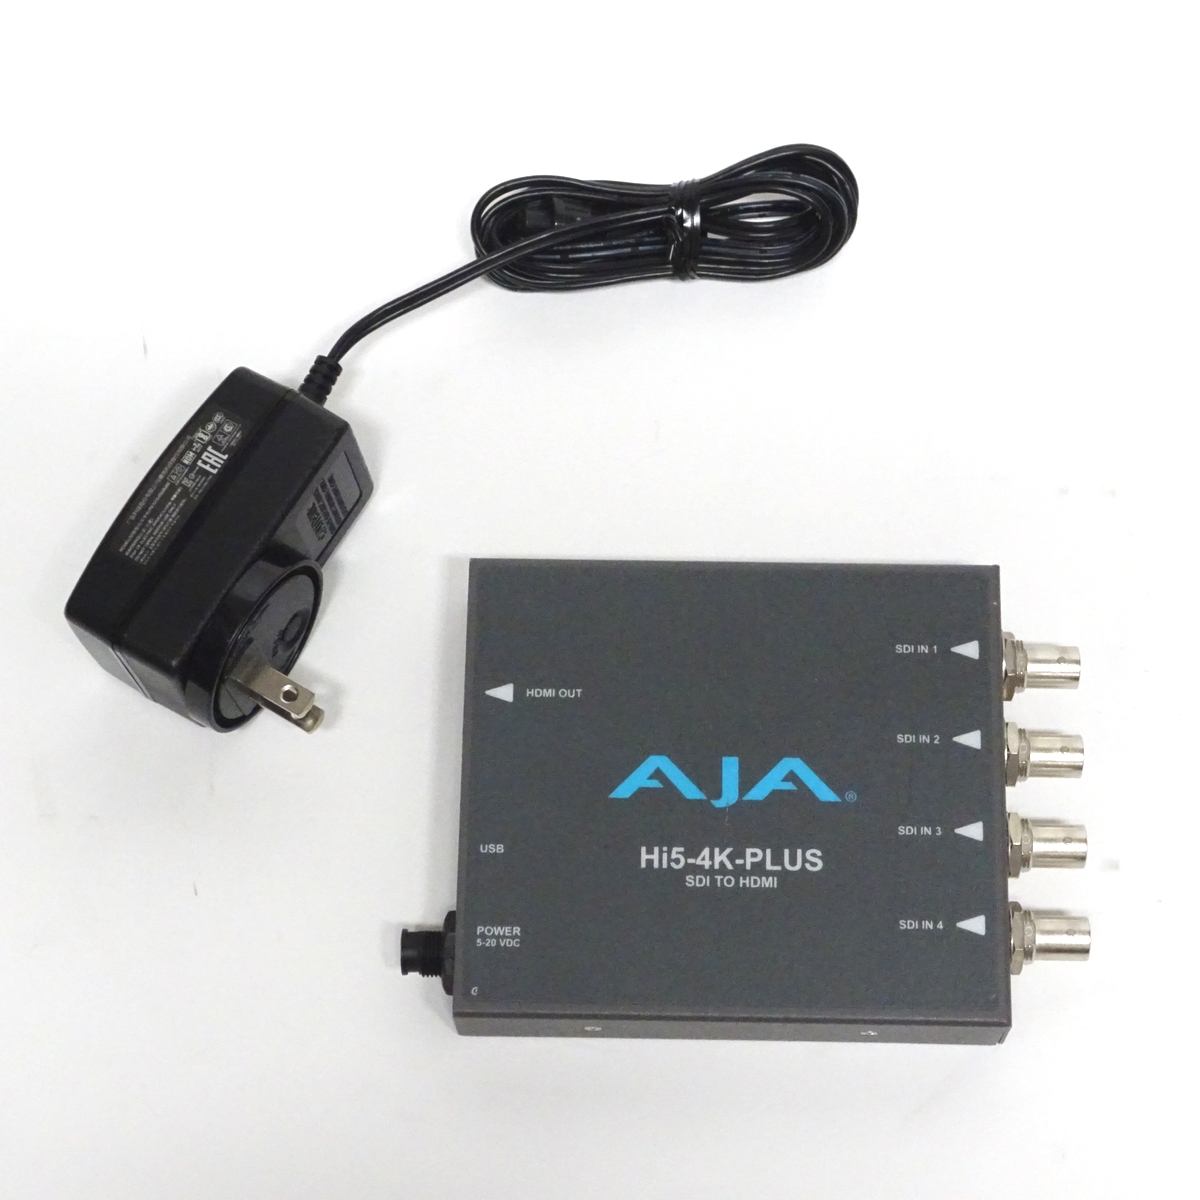 【中古】AJA Hi5-4K-Plus 3G-SDI→HDMI2.0 コンバーター 【愛知発送1】